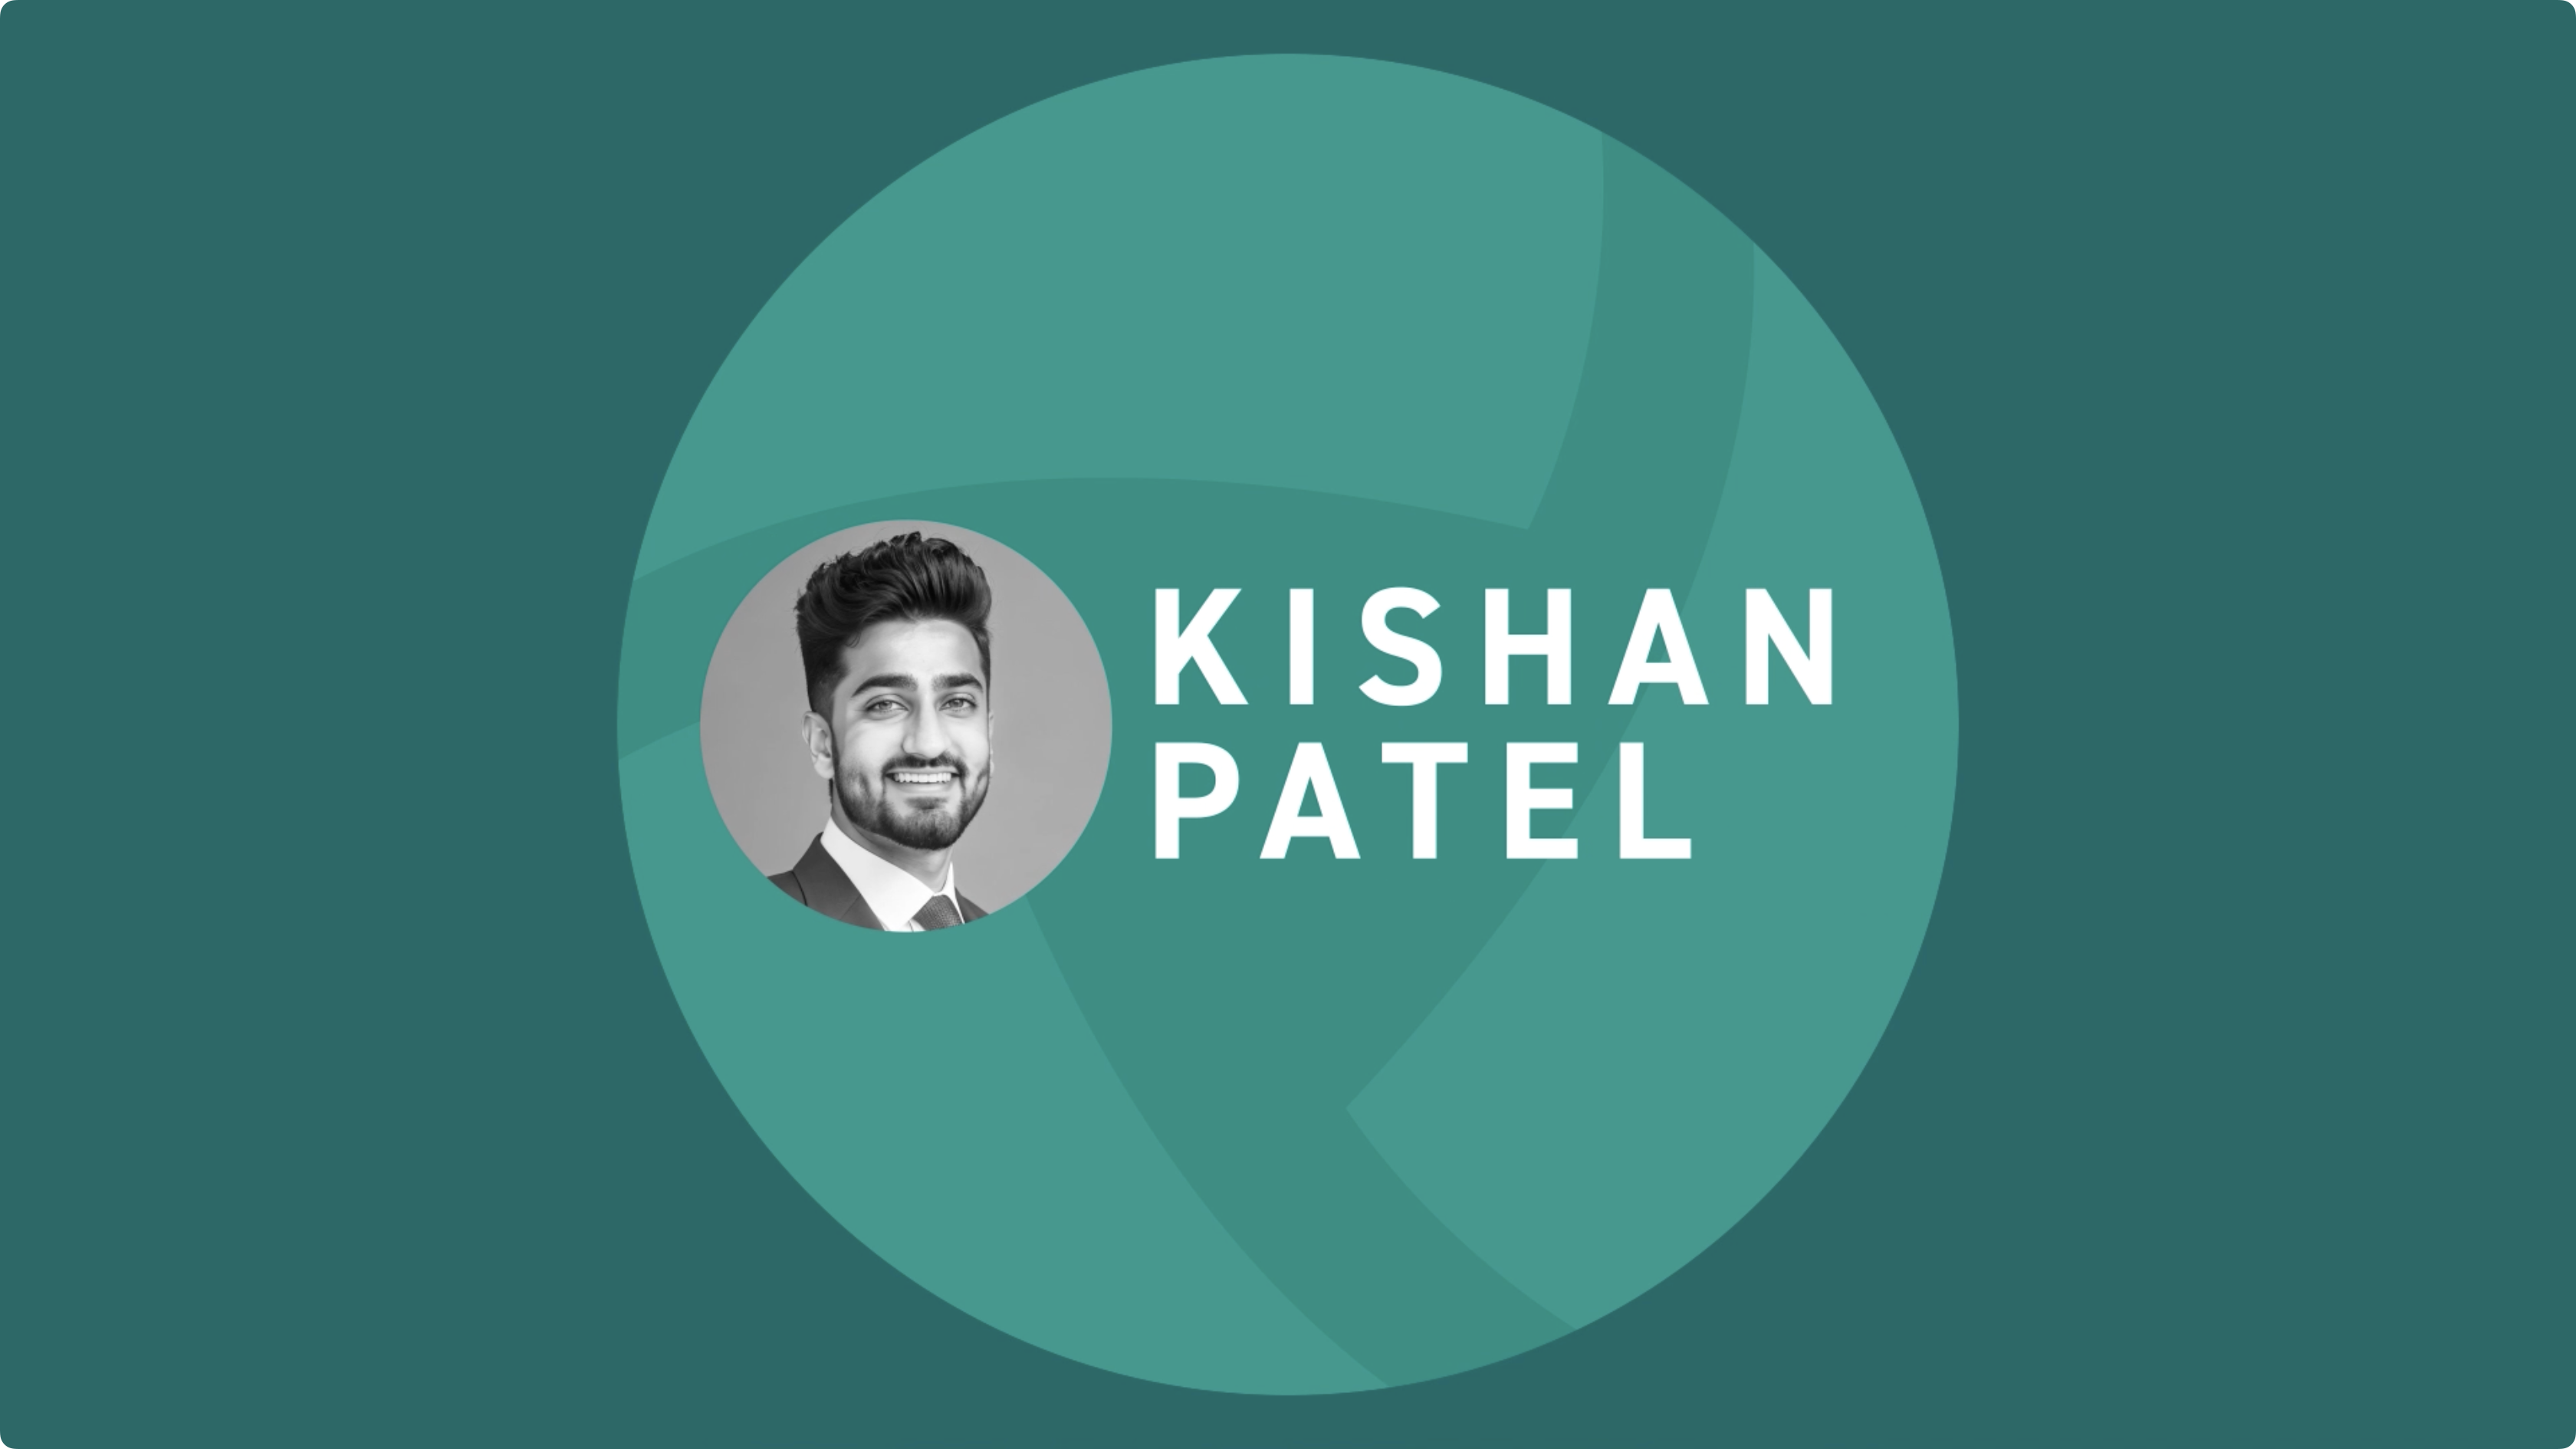 Kishan Patel